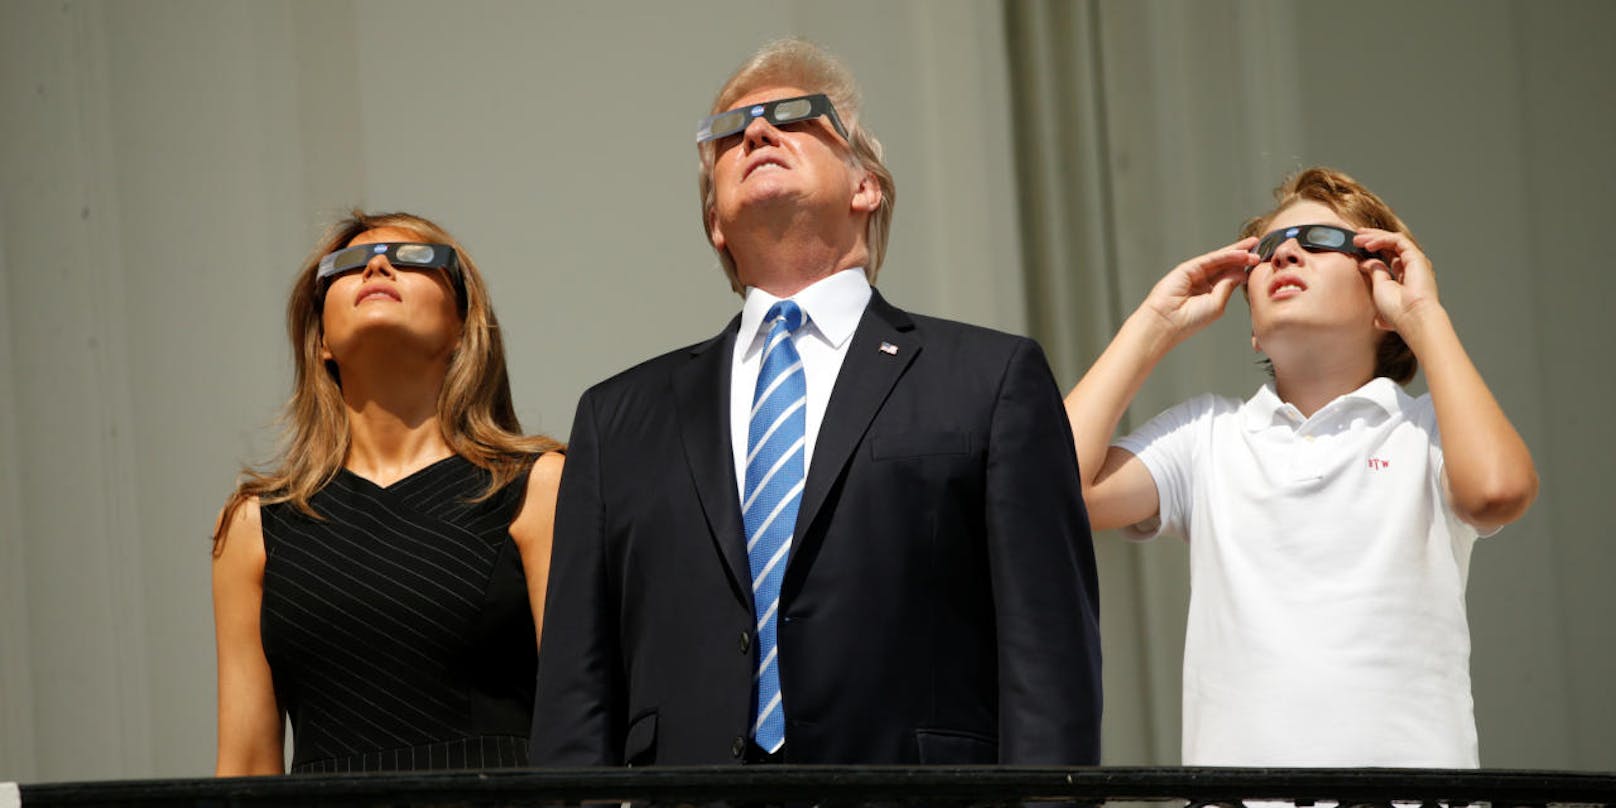 Barron, Melania und Donald Trump beim Beobachten der Sonnenfinsternis am Balkon des Weißen Hauses.